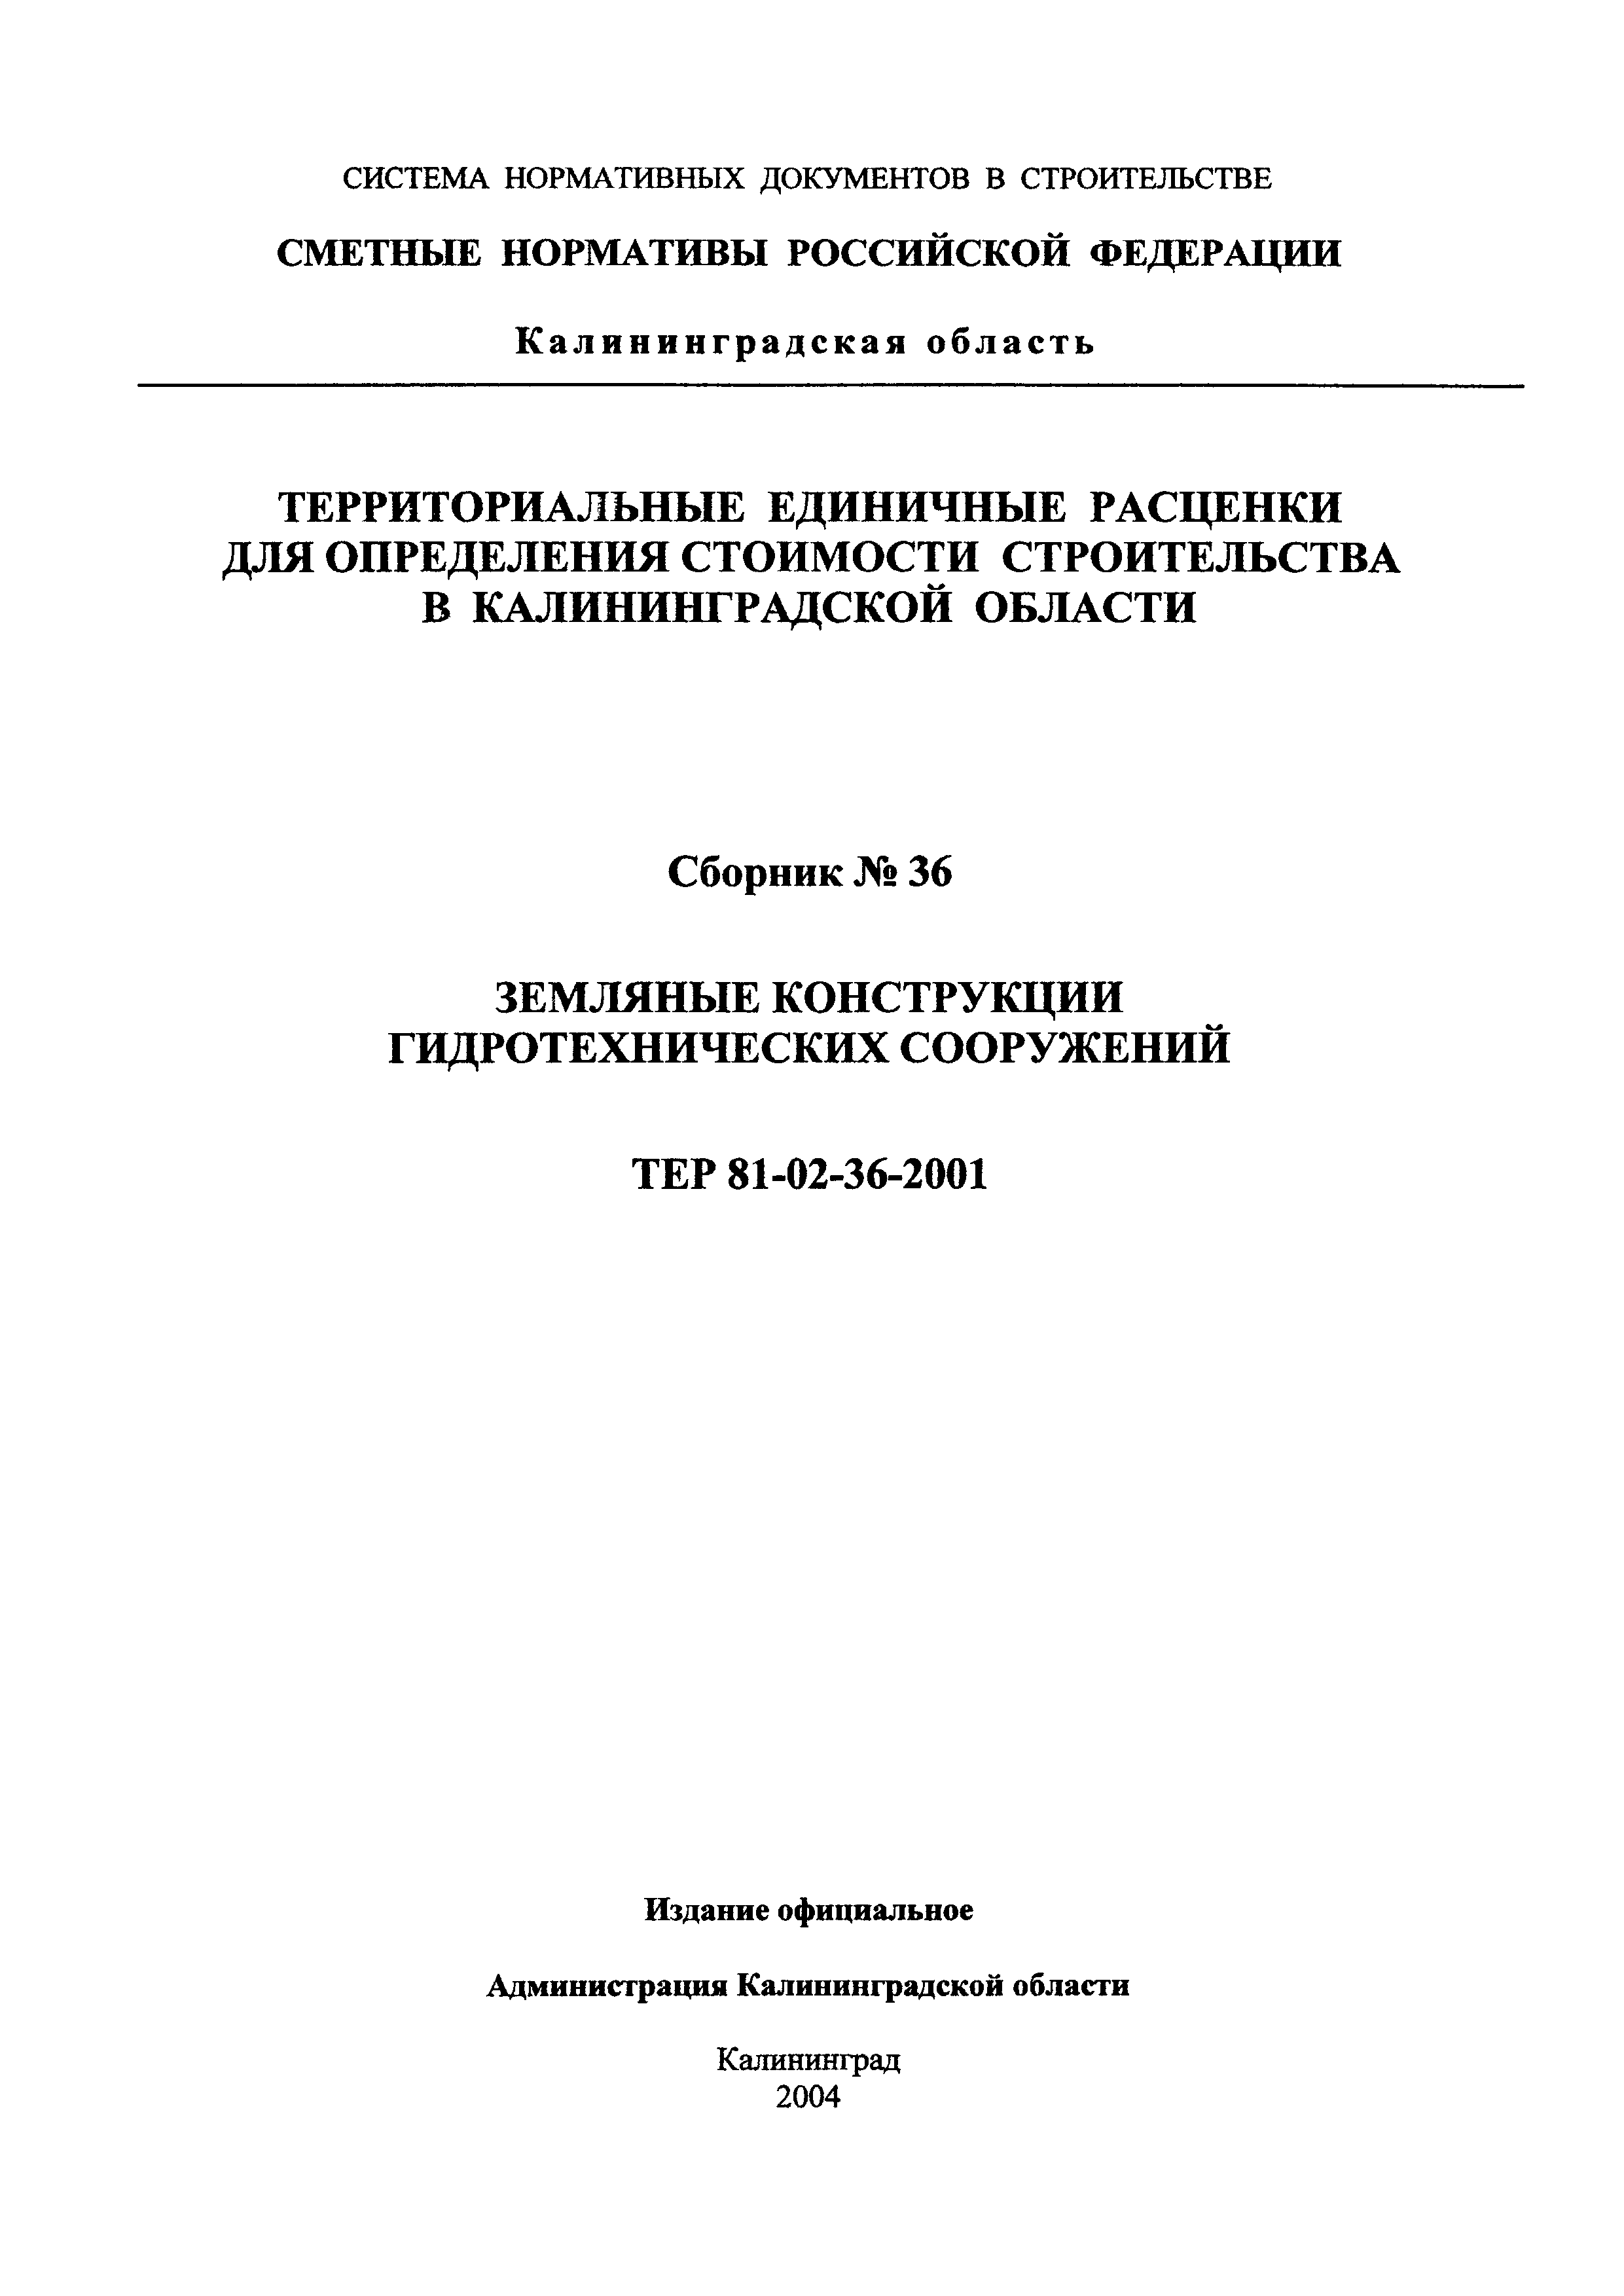 ТЕР Калининградская область 2001-36